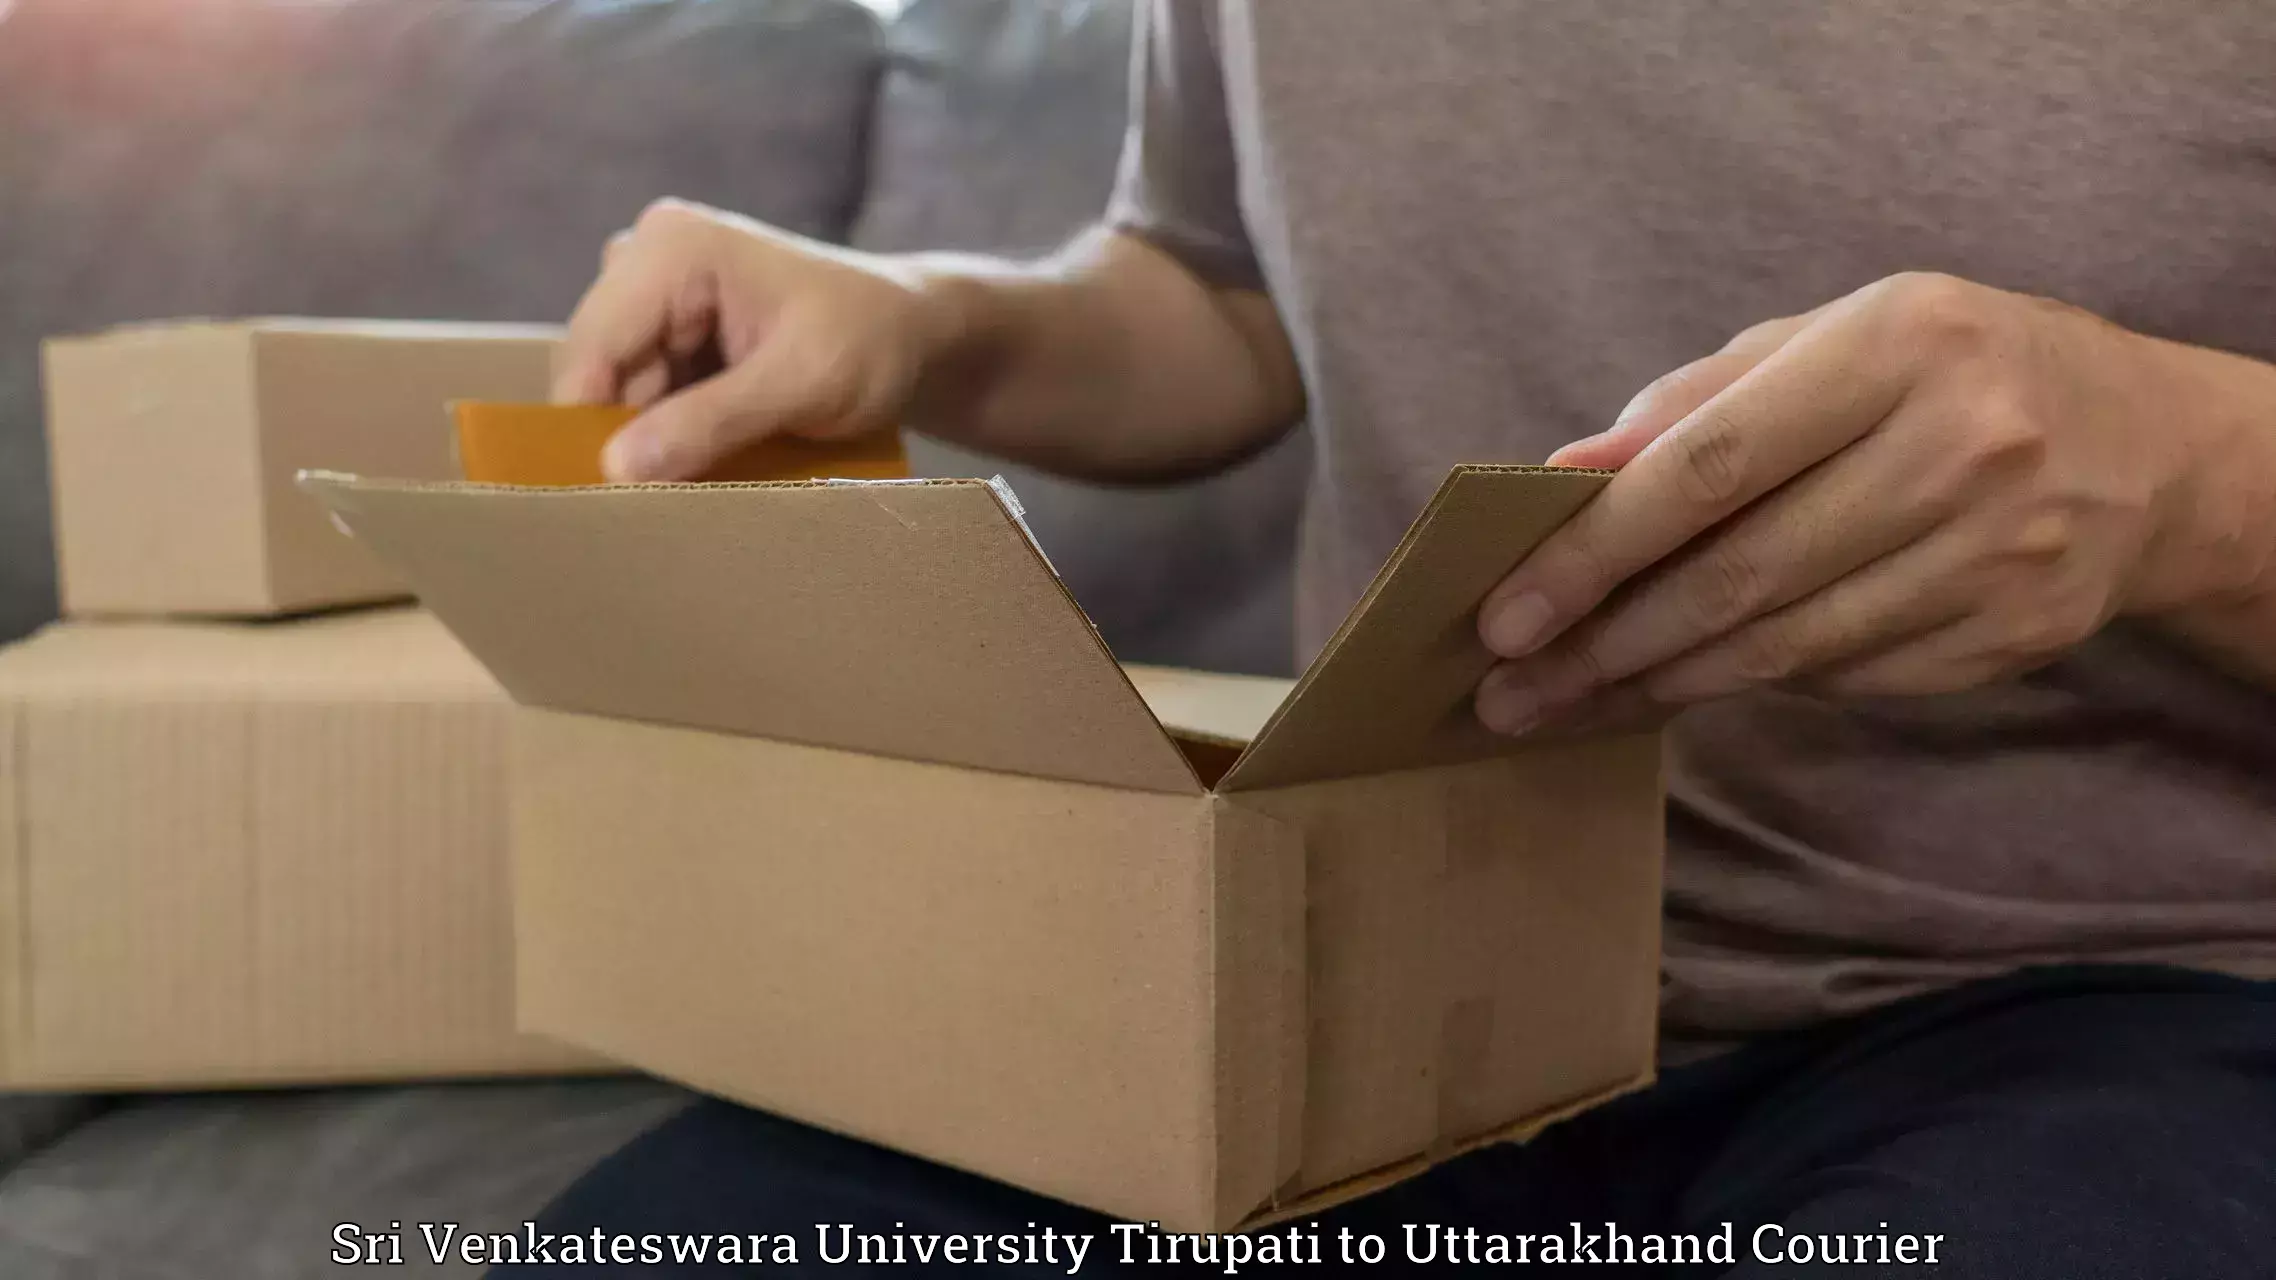 Courier service efficiency Sri Venkateswara University Tirupati to Tehri